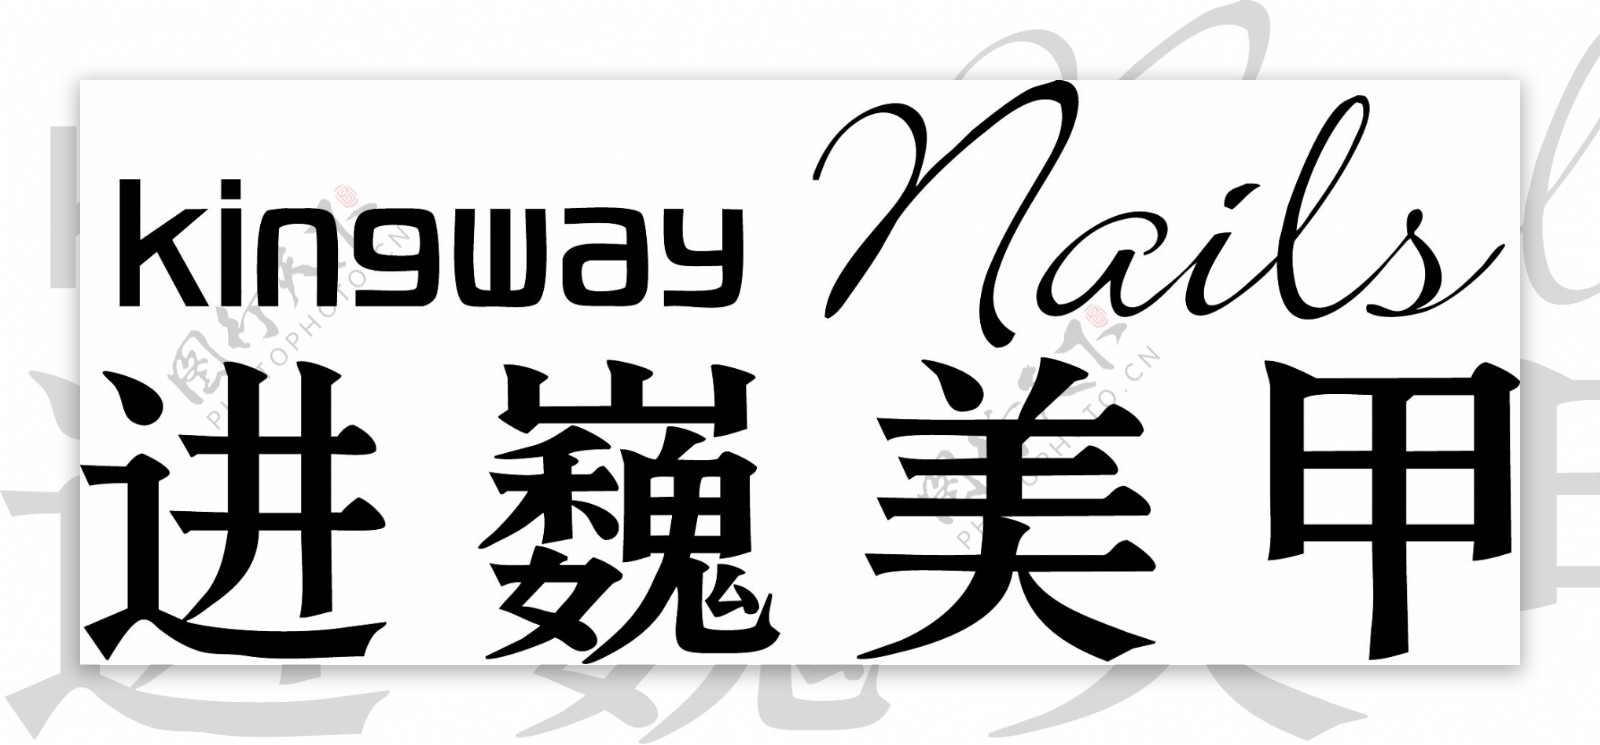 进巍美甲kingway矢量logo图片